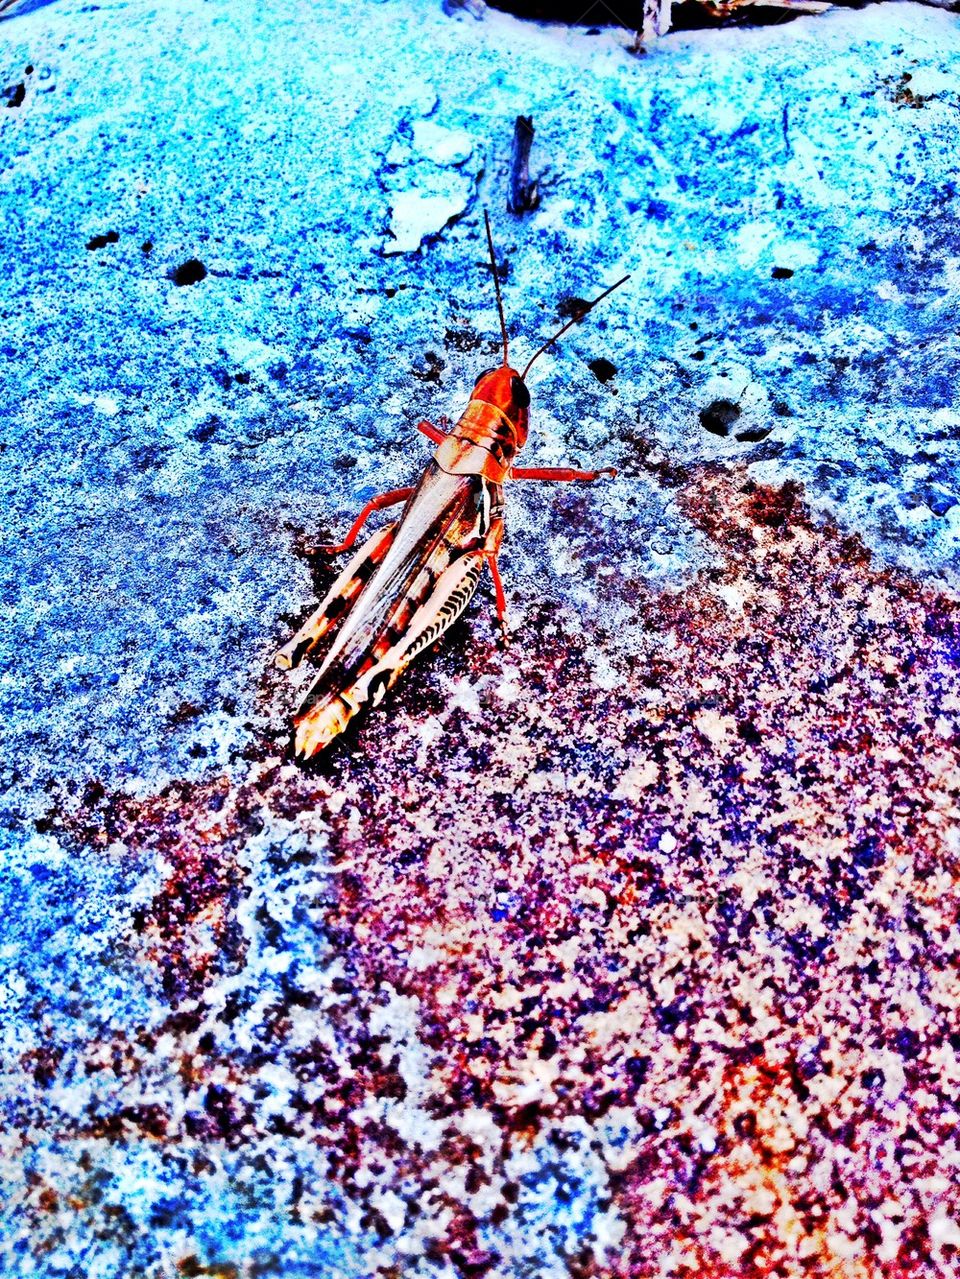 Grasshopper on concrete